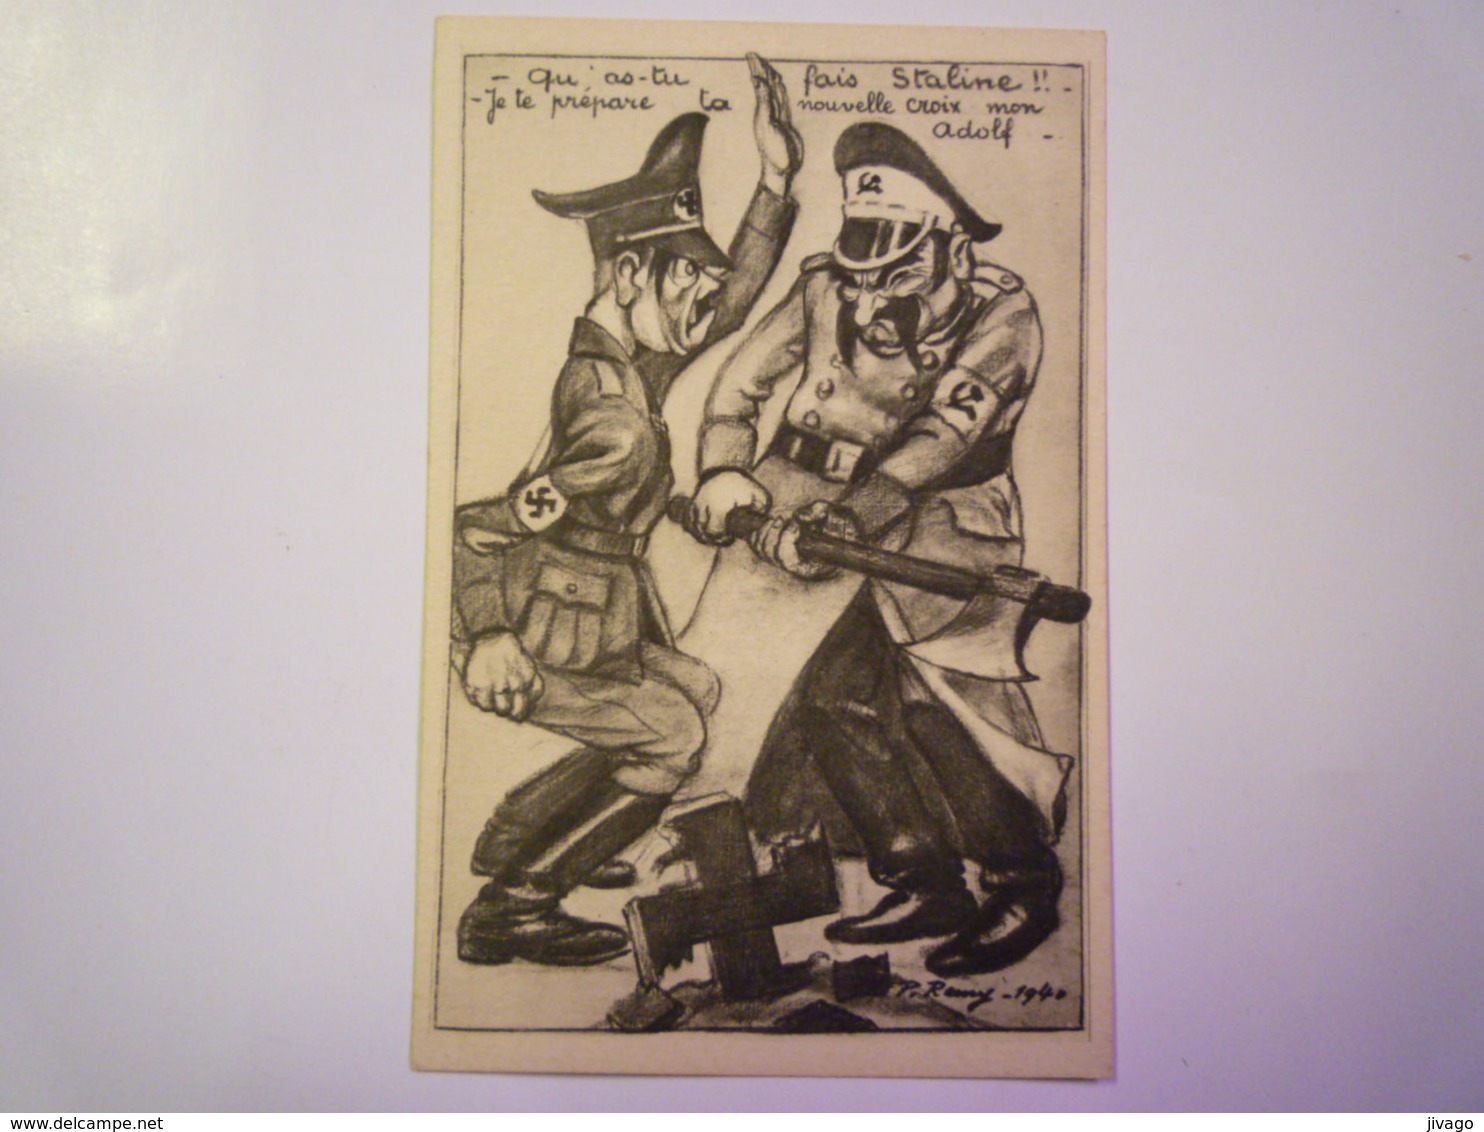 2019  (133)  Illustrateur P. REMY  1940  :  Carte Humoristique  "Qu'as-tu Fais STALINE !! "   - Guerre 1939-45